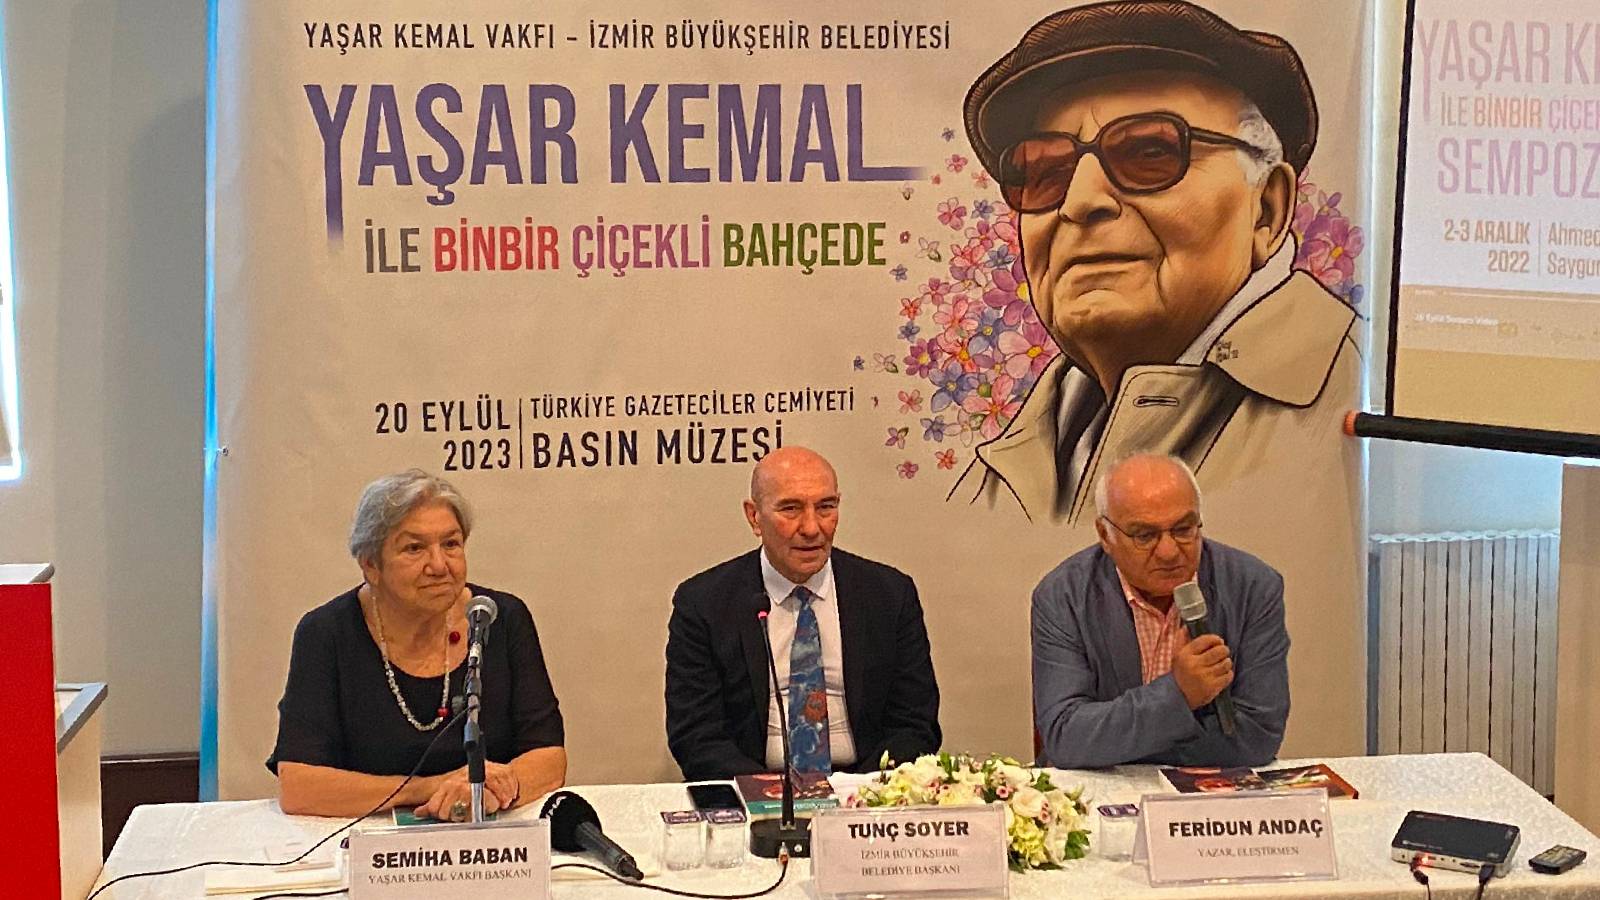 Sempozyum kitaba dönüştü, "Yaşar Kemal ile Binbir Çiçekli Bahçede" okura sunuldu: Kemal'in sesi ve cümleleri, daha çok şahsa ulaşacak